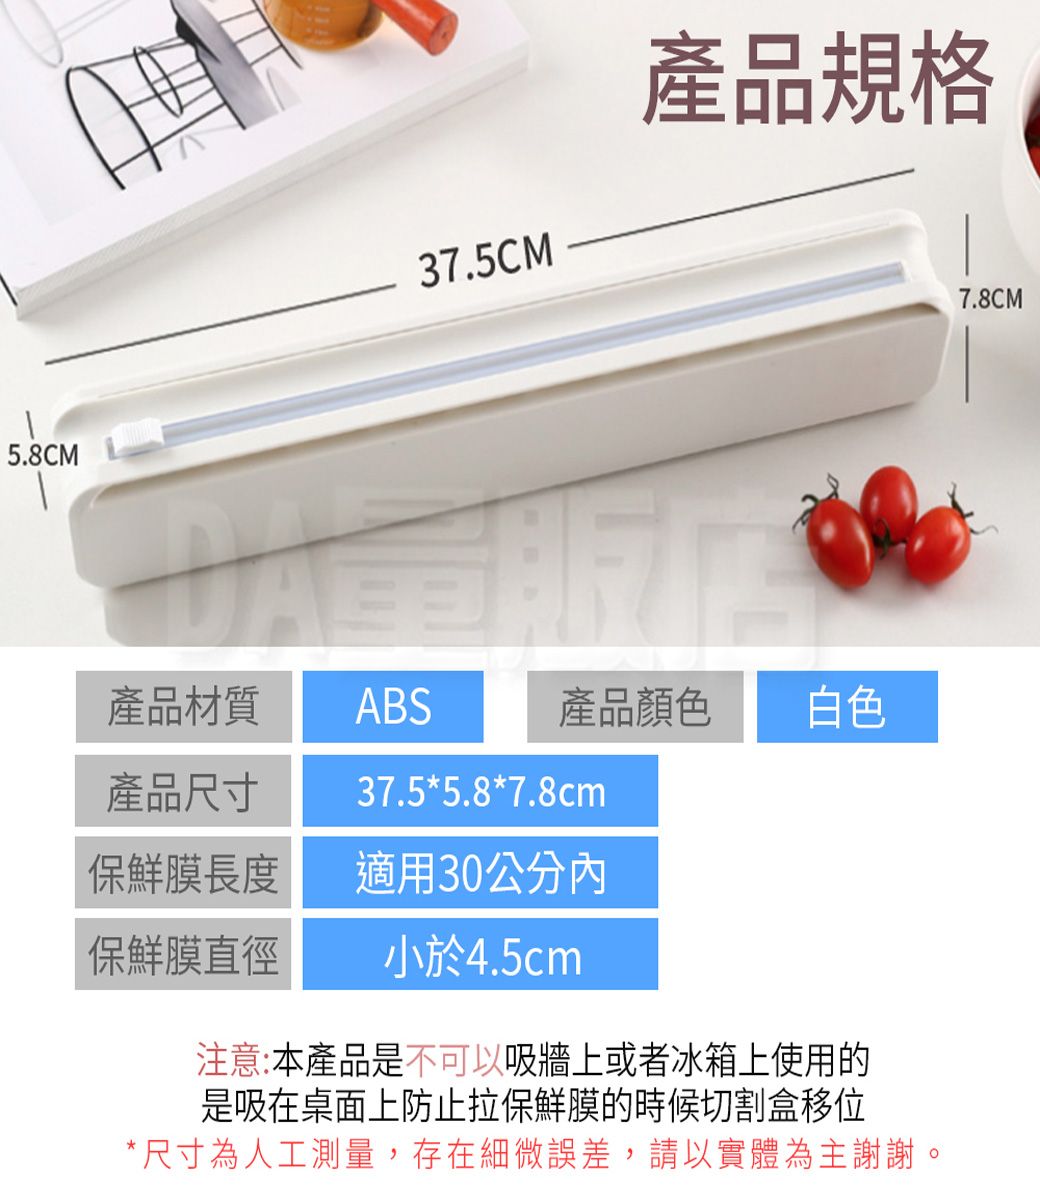 5.8CM37.5CM產品規格產品尺寸產品材質ABS37.5*5.8*7.8cm產品顏色白色保鮮膜長度適用30公分內保鮮膜直徑小於4.5cm注意:本產品是不可以吸牆上或者冰箱上使用的是吸在桌面上防止拉保鮮膜的時候切割盒移位*尺寸為人工測量,存在細微誤差,請以實體為主謝謝。7.8CM